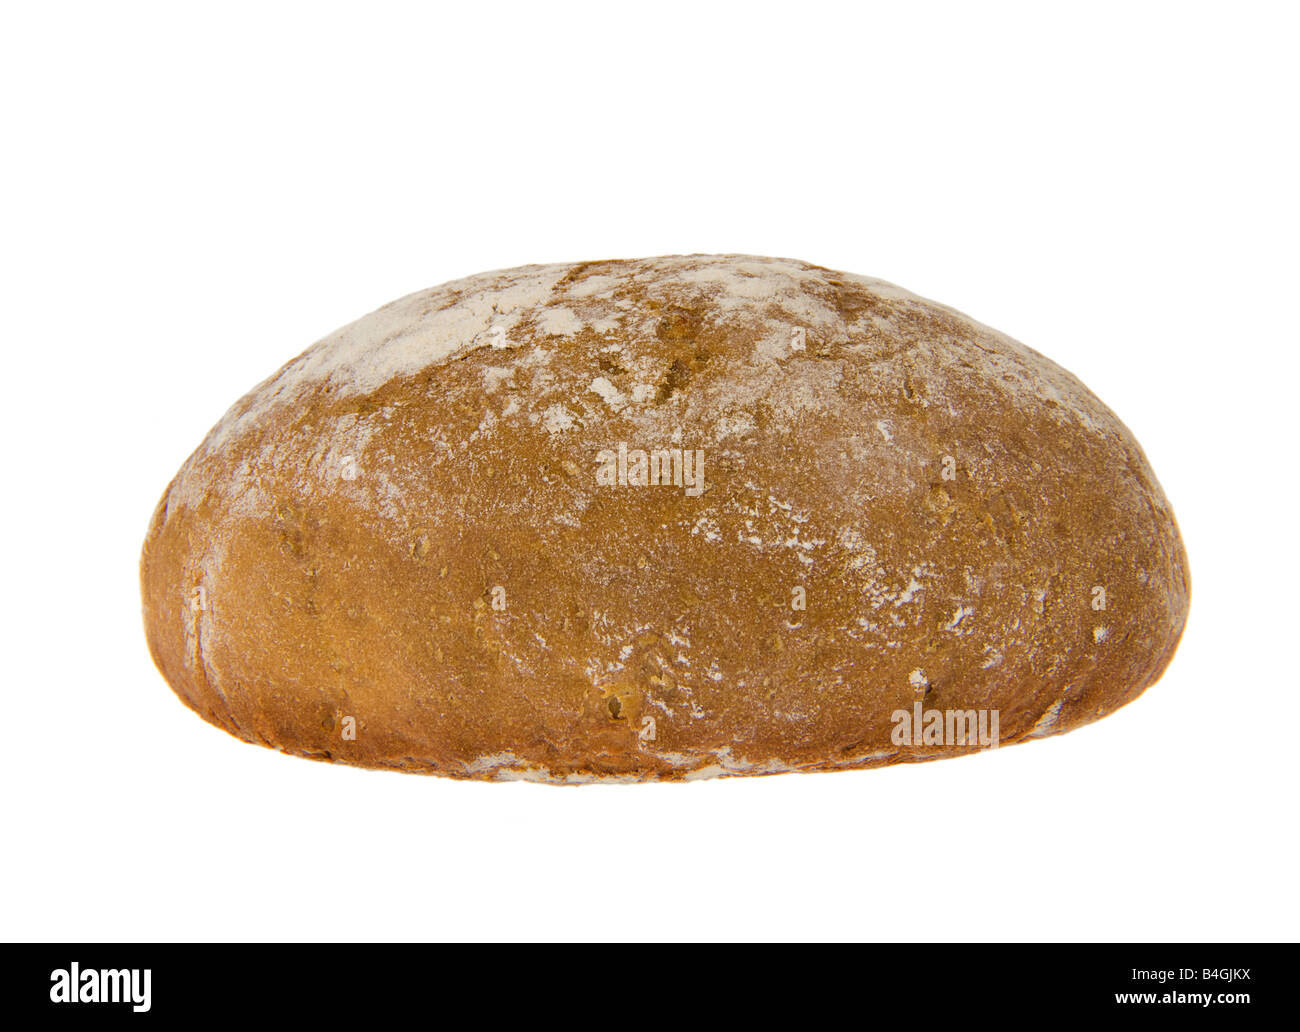 Alimentos dietéticos pan marrón oscuro pan de centeno alemán Alemania brot baker levadura de panadería sourdough cob hogaza de pan losa REDONDA CR Foto de stock